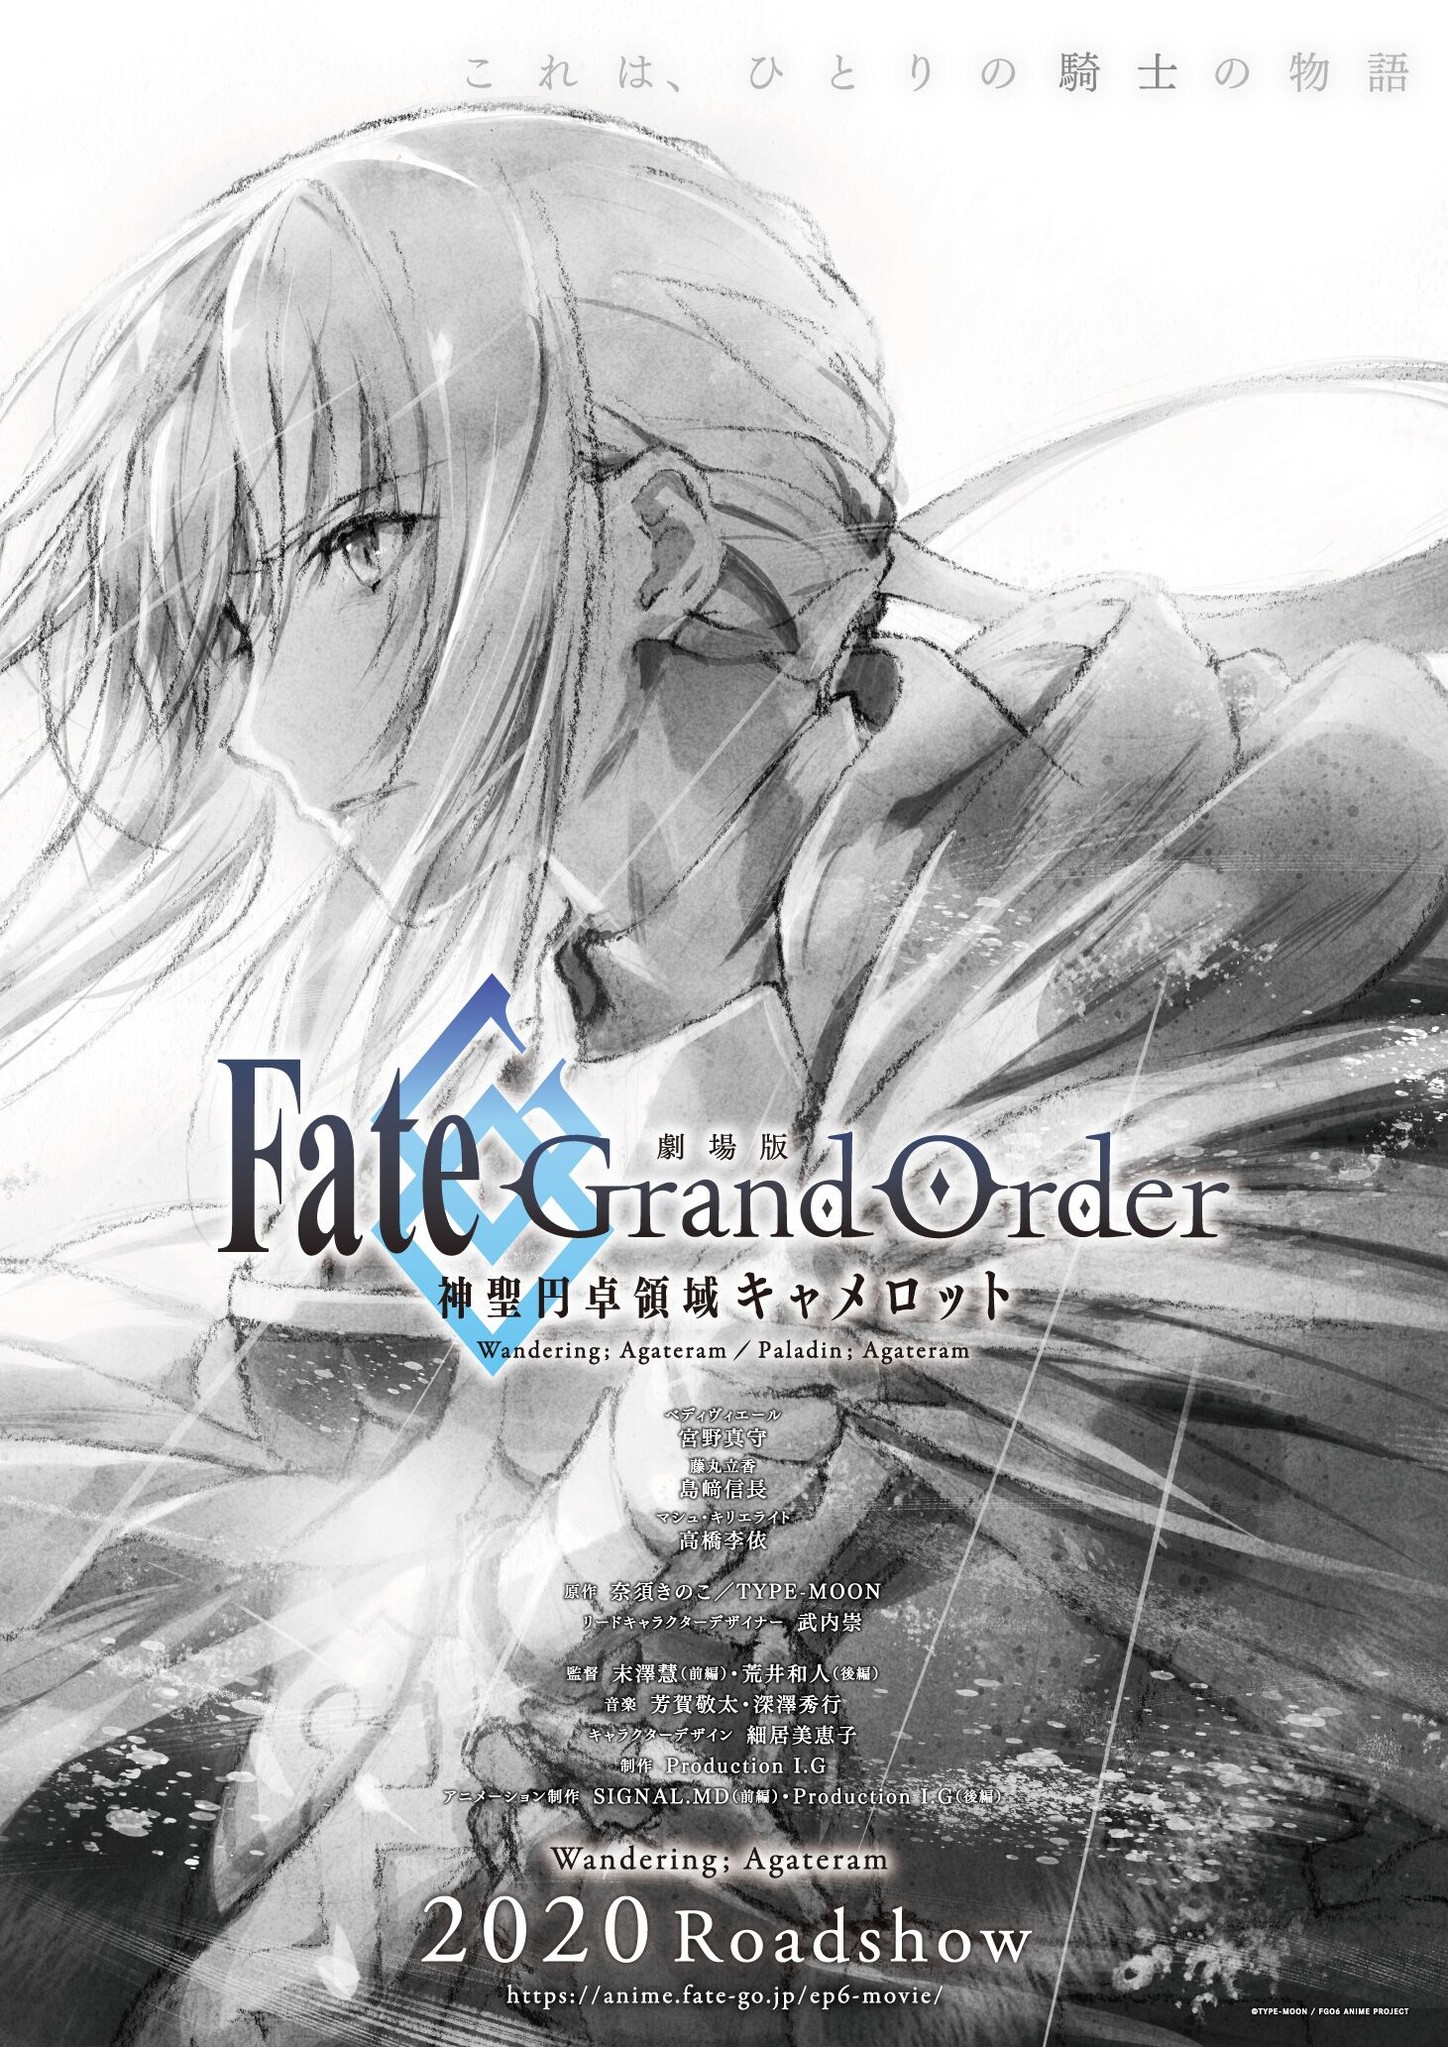 劇場版 Fate Grand Order 神聖円卓領域キャメロット コンセプトビジュアル スタッフ キャスト情報 前編 公開時期を発表 株式会社アニプレックスのプレスリリース